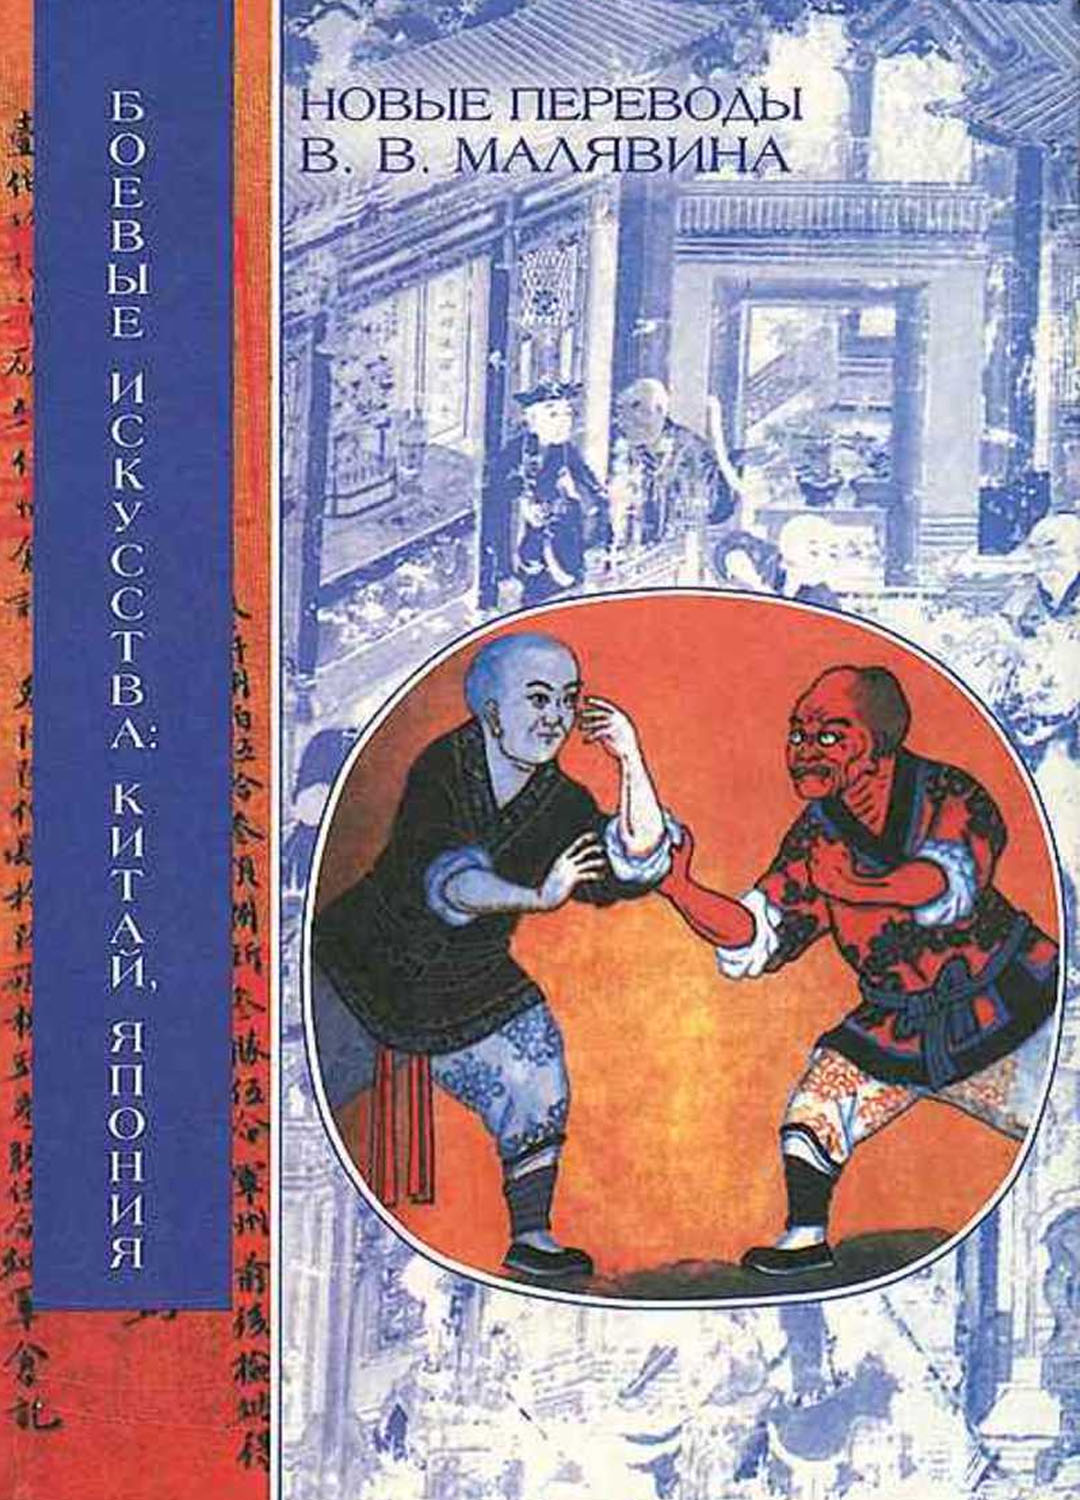 «Боевые искусства: Китай, Япония» — Владимир Малявин, 2004 г.